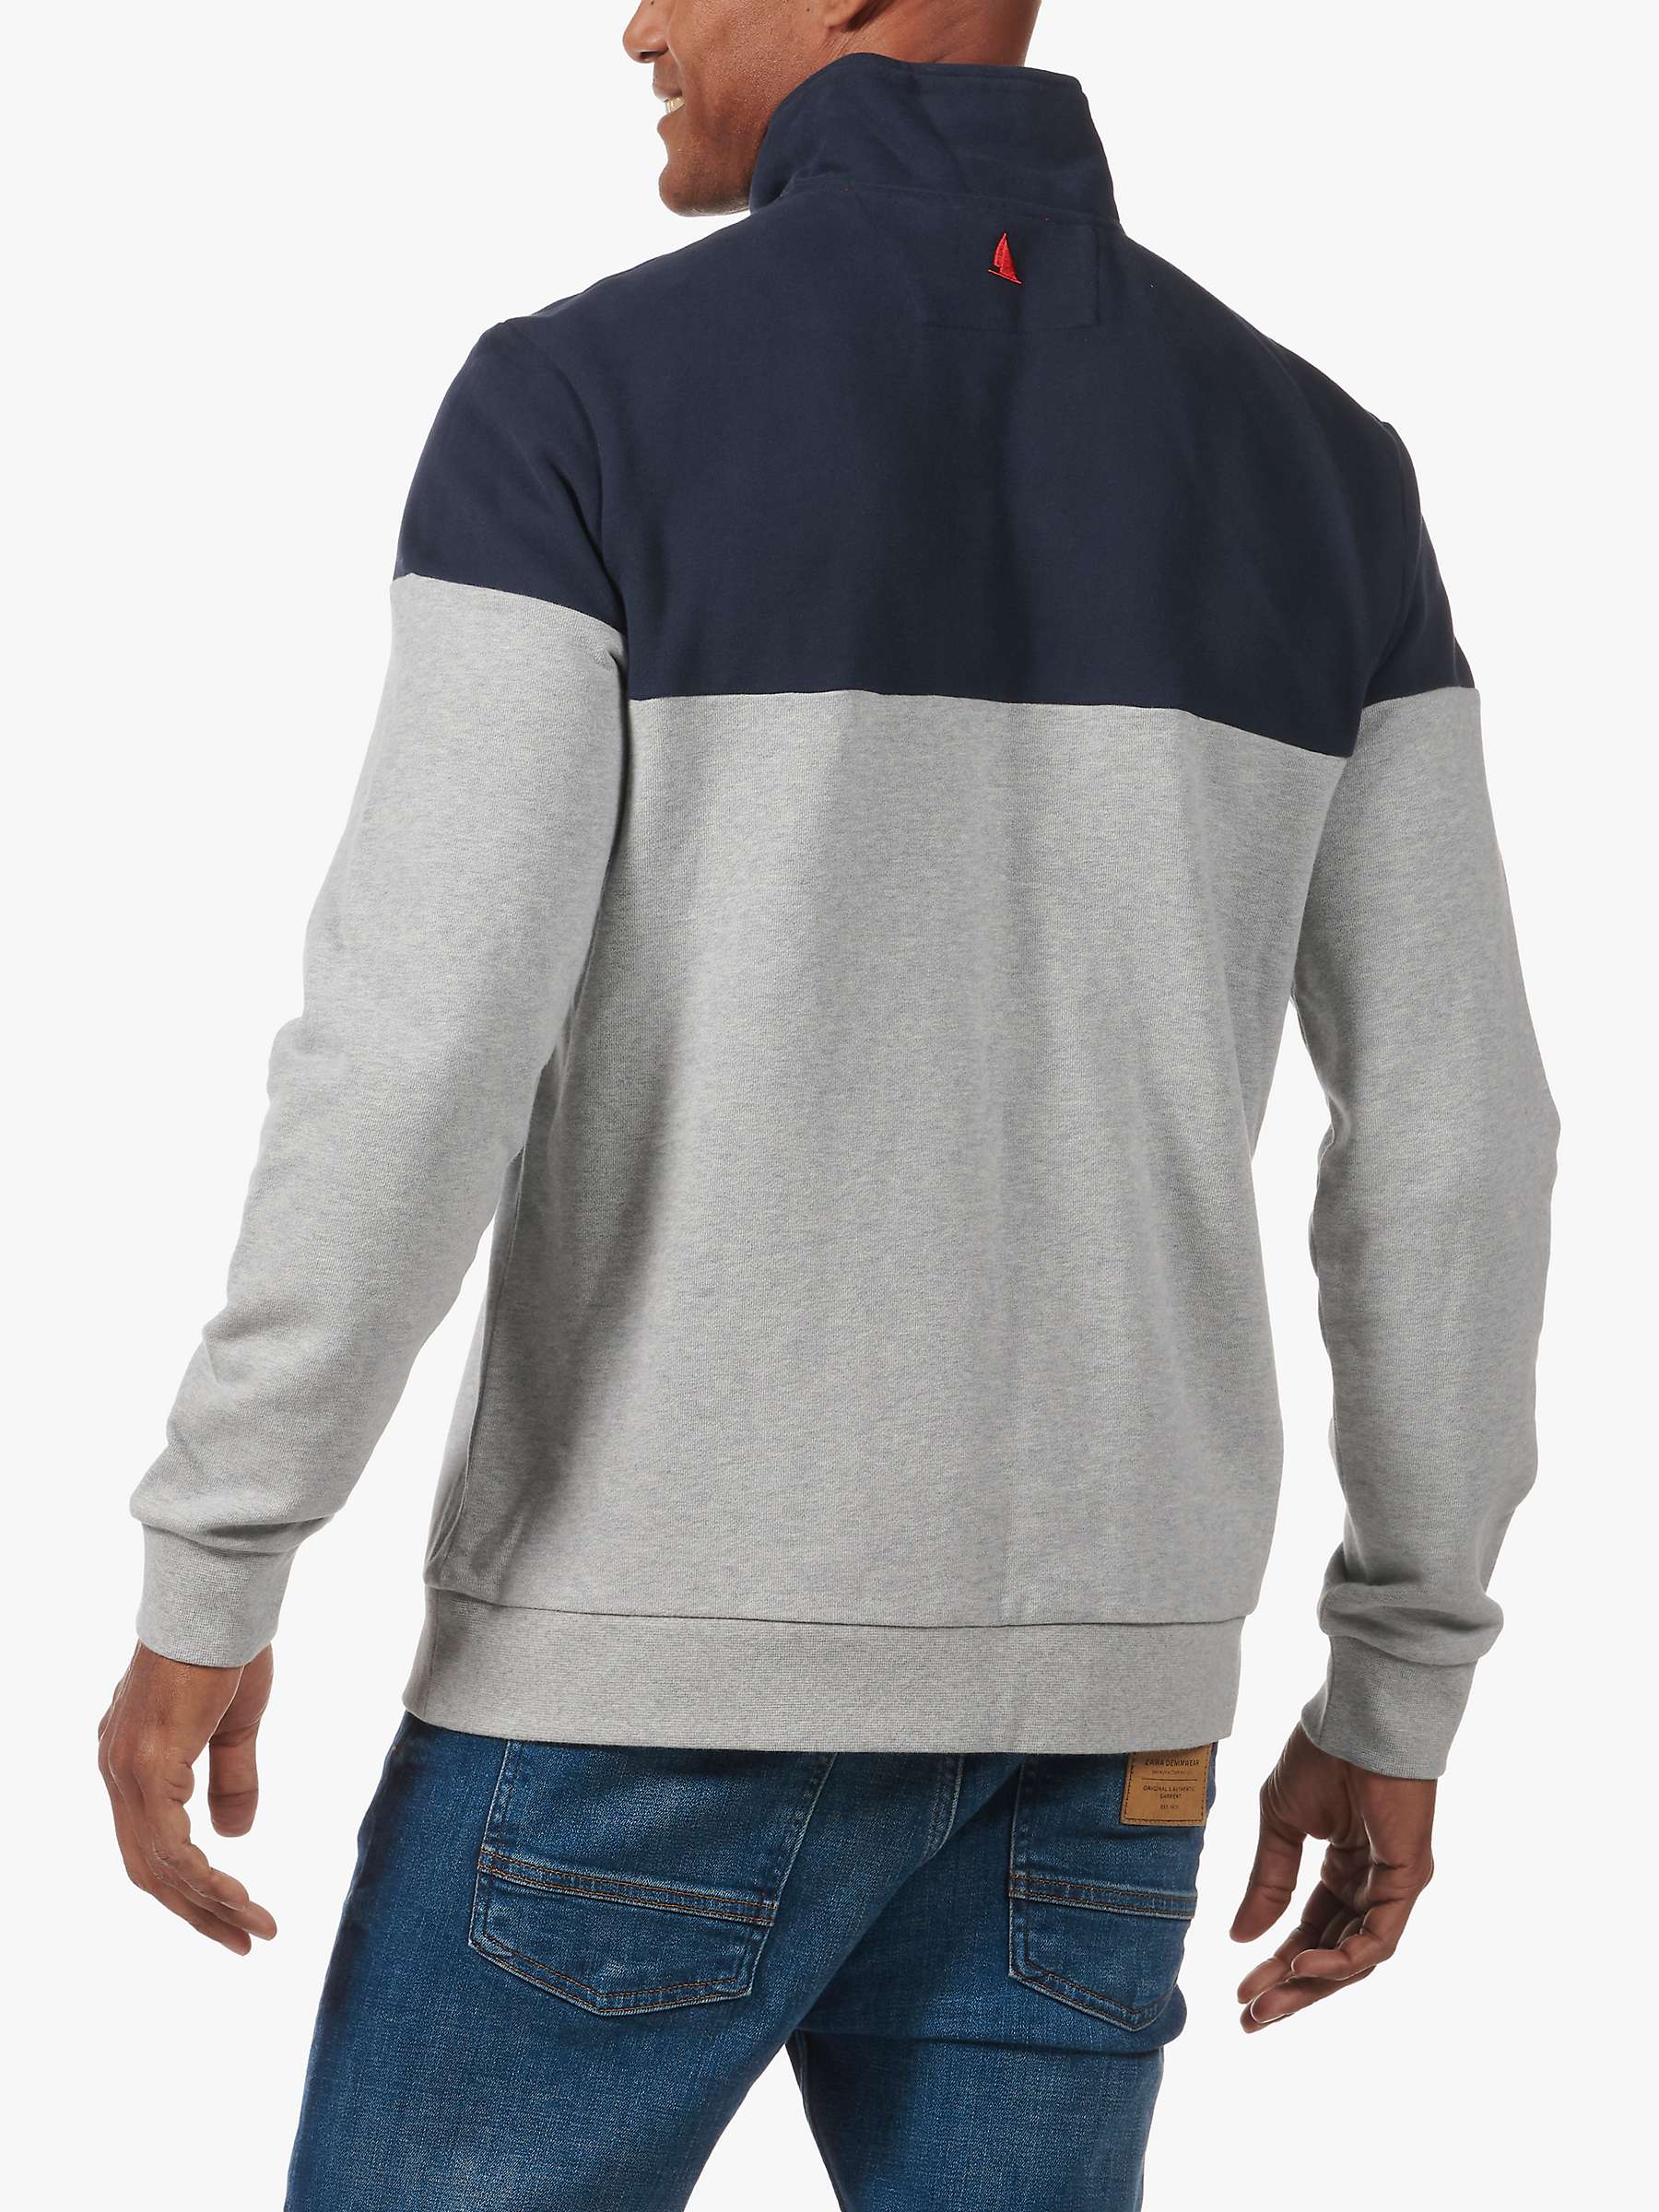 Buy Musto Marina Zip Neck Cotton Sweatshirt, Grey Melange/Navy Online at johnlewis.com